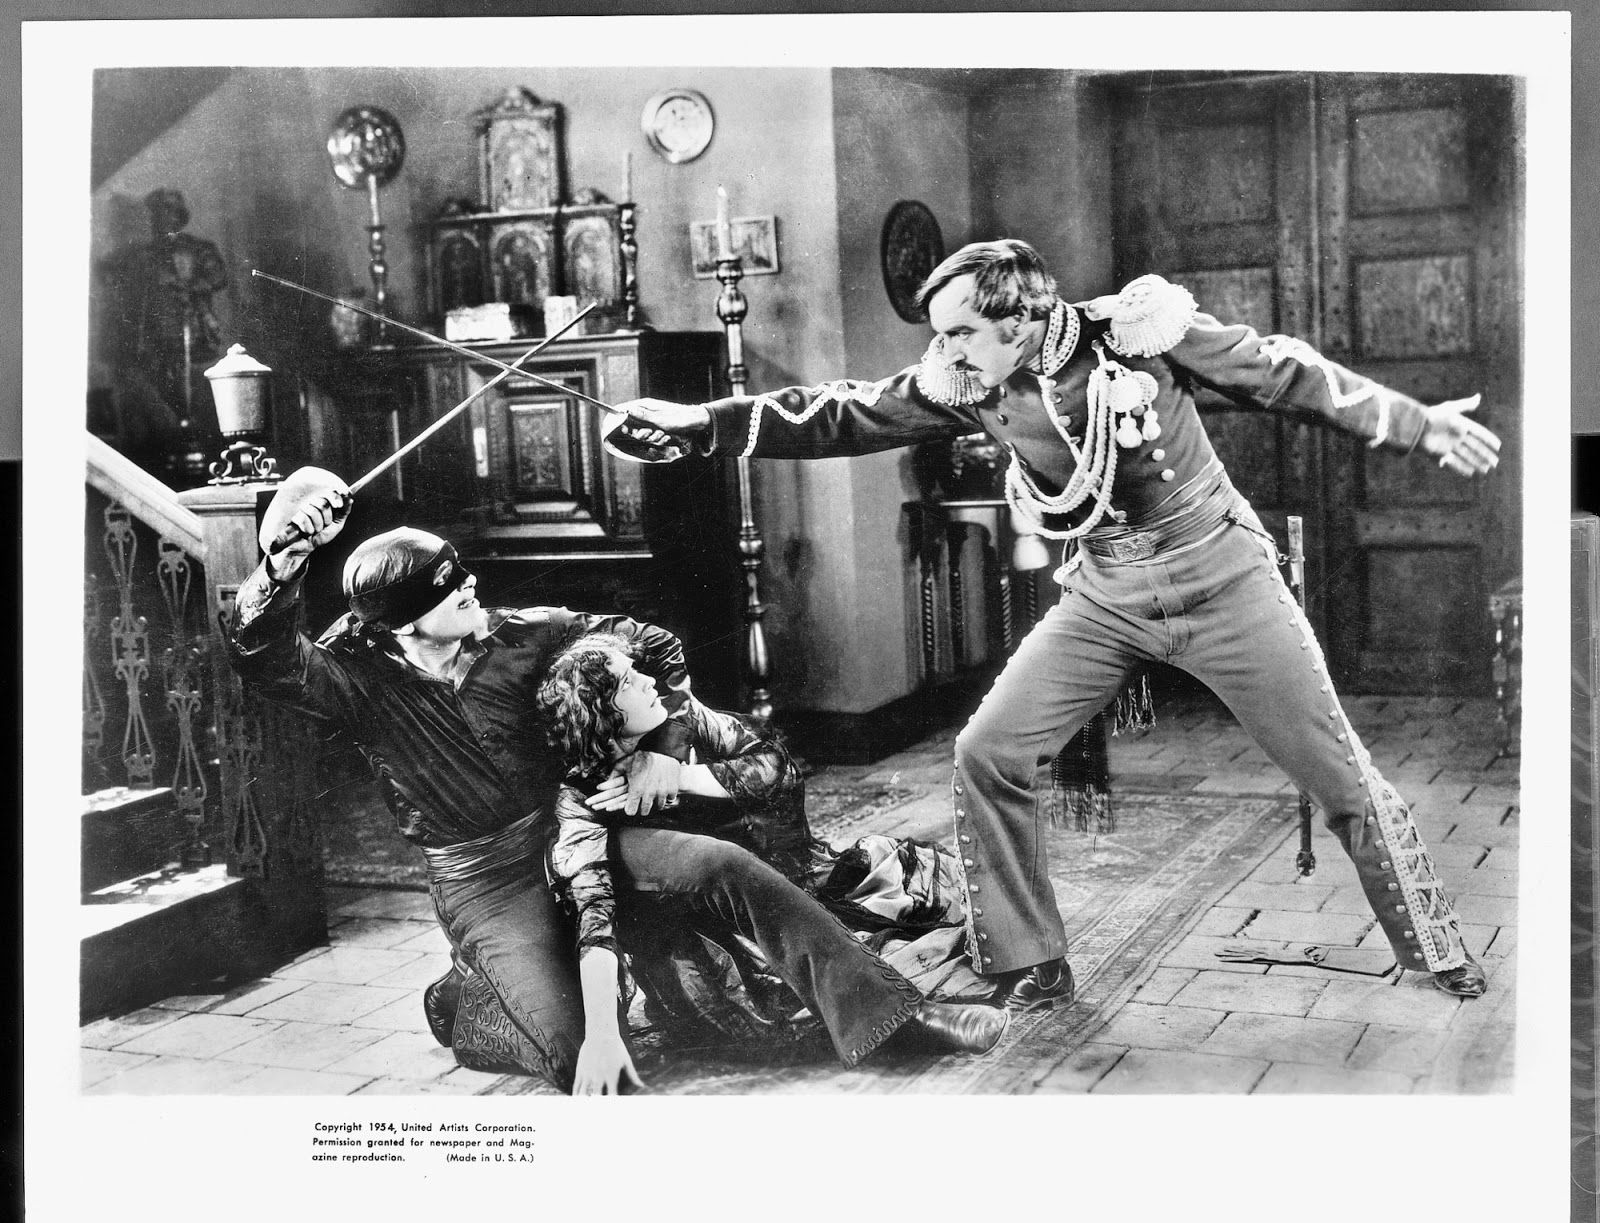 Shoujo Café: Comentando A Marca do Zorro (EUA/1940) + Uma Pequena